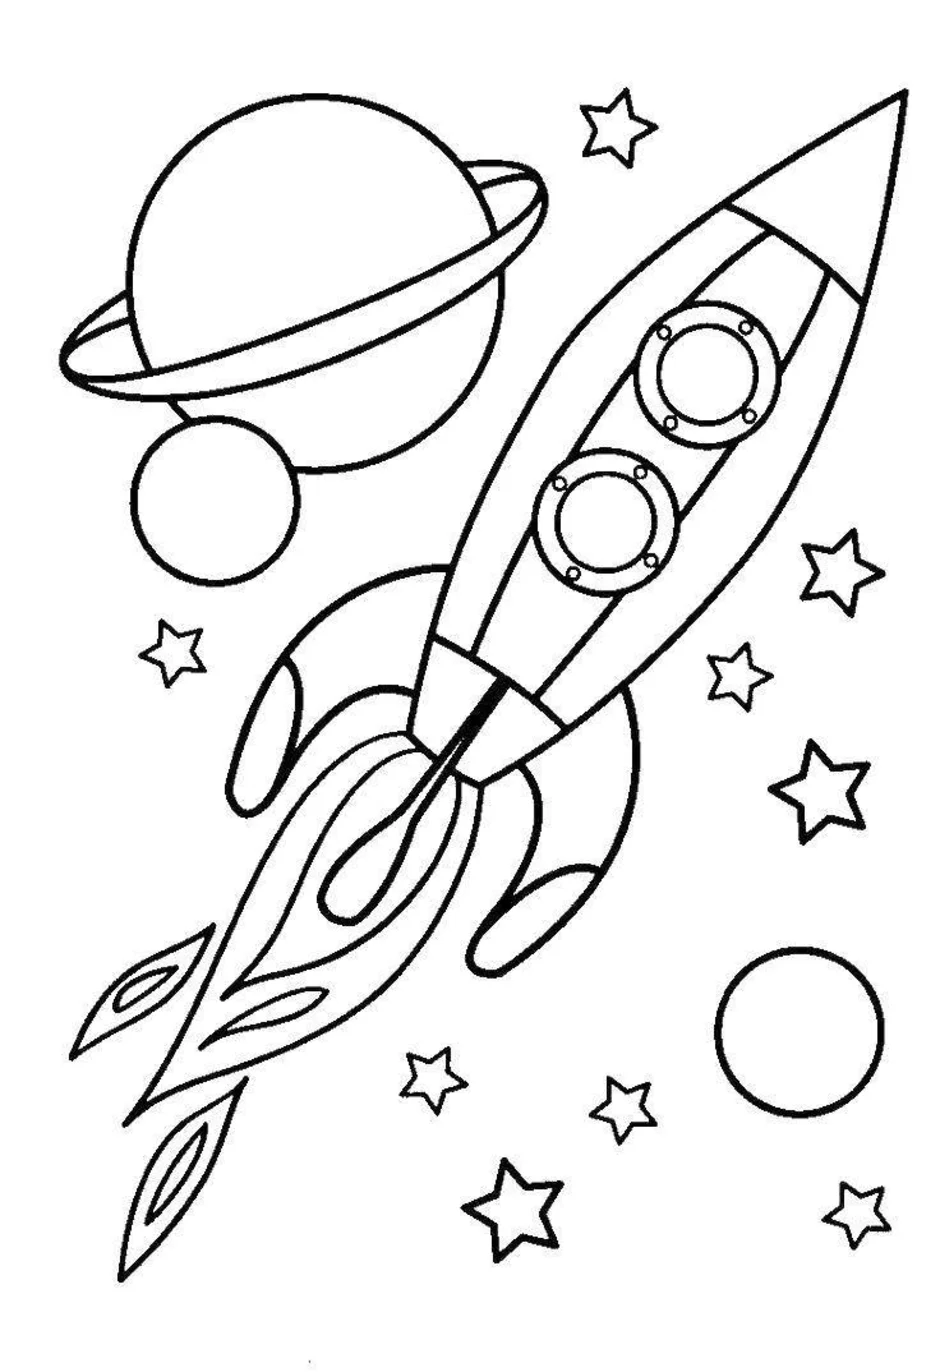 Раскраски для детей на тему космос